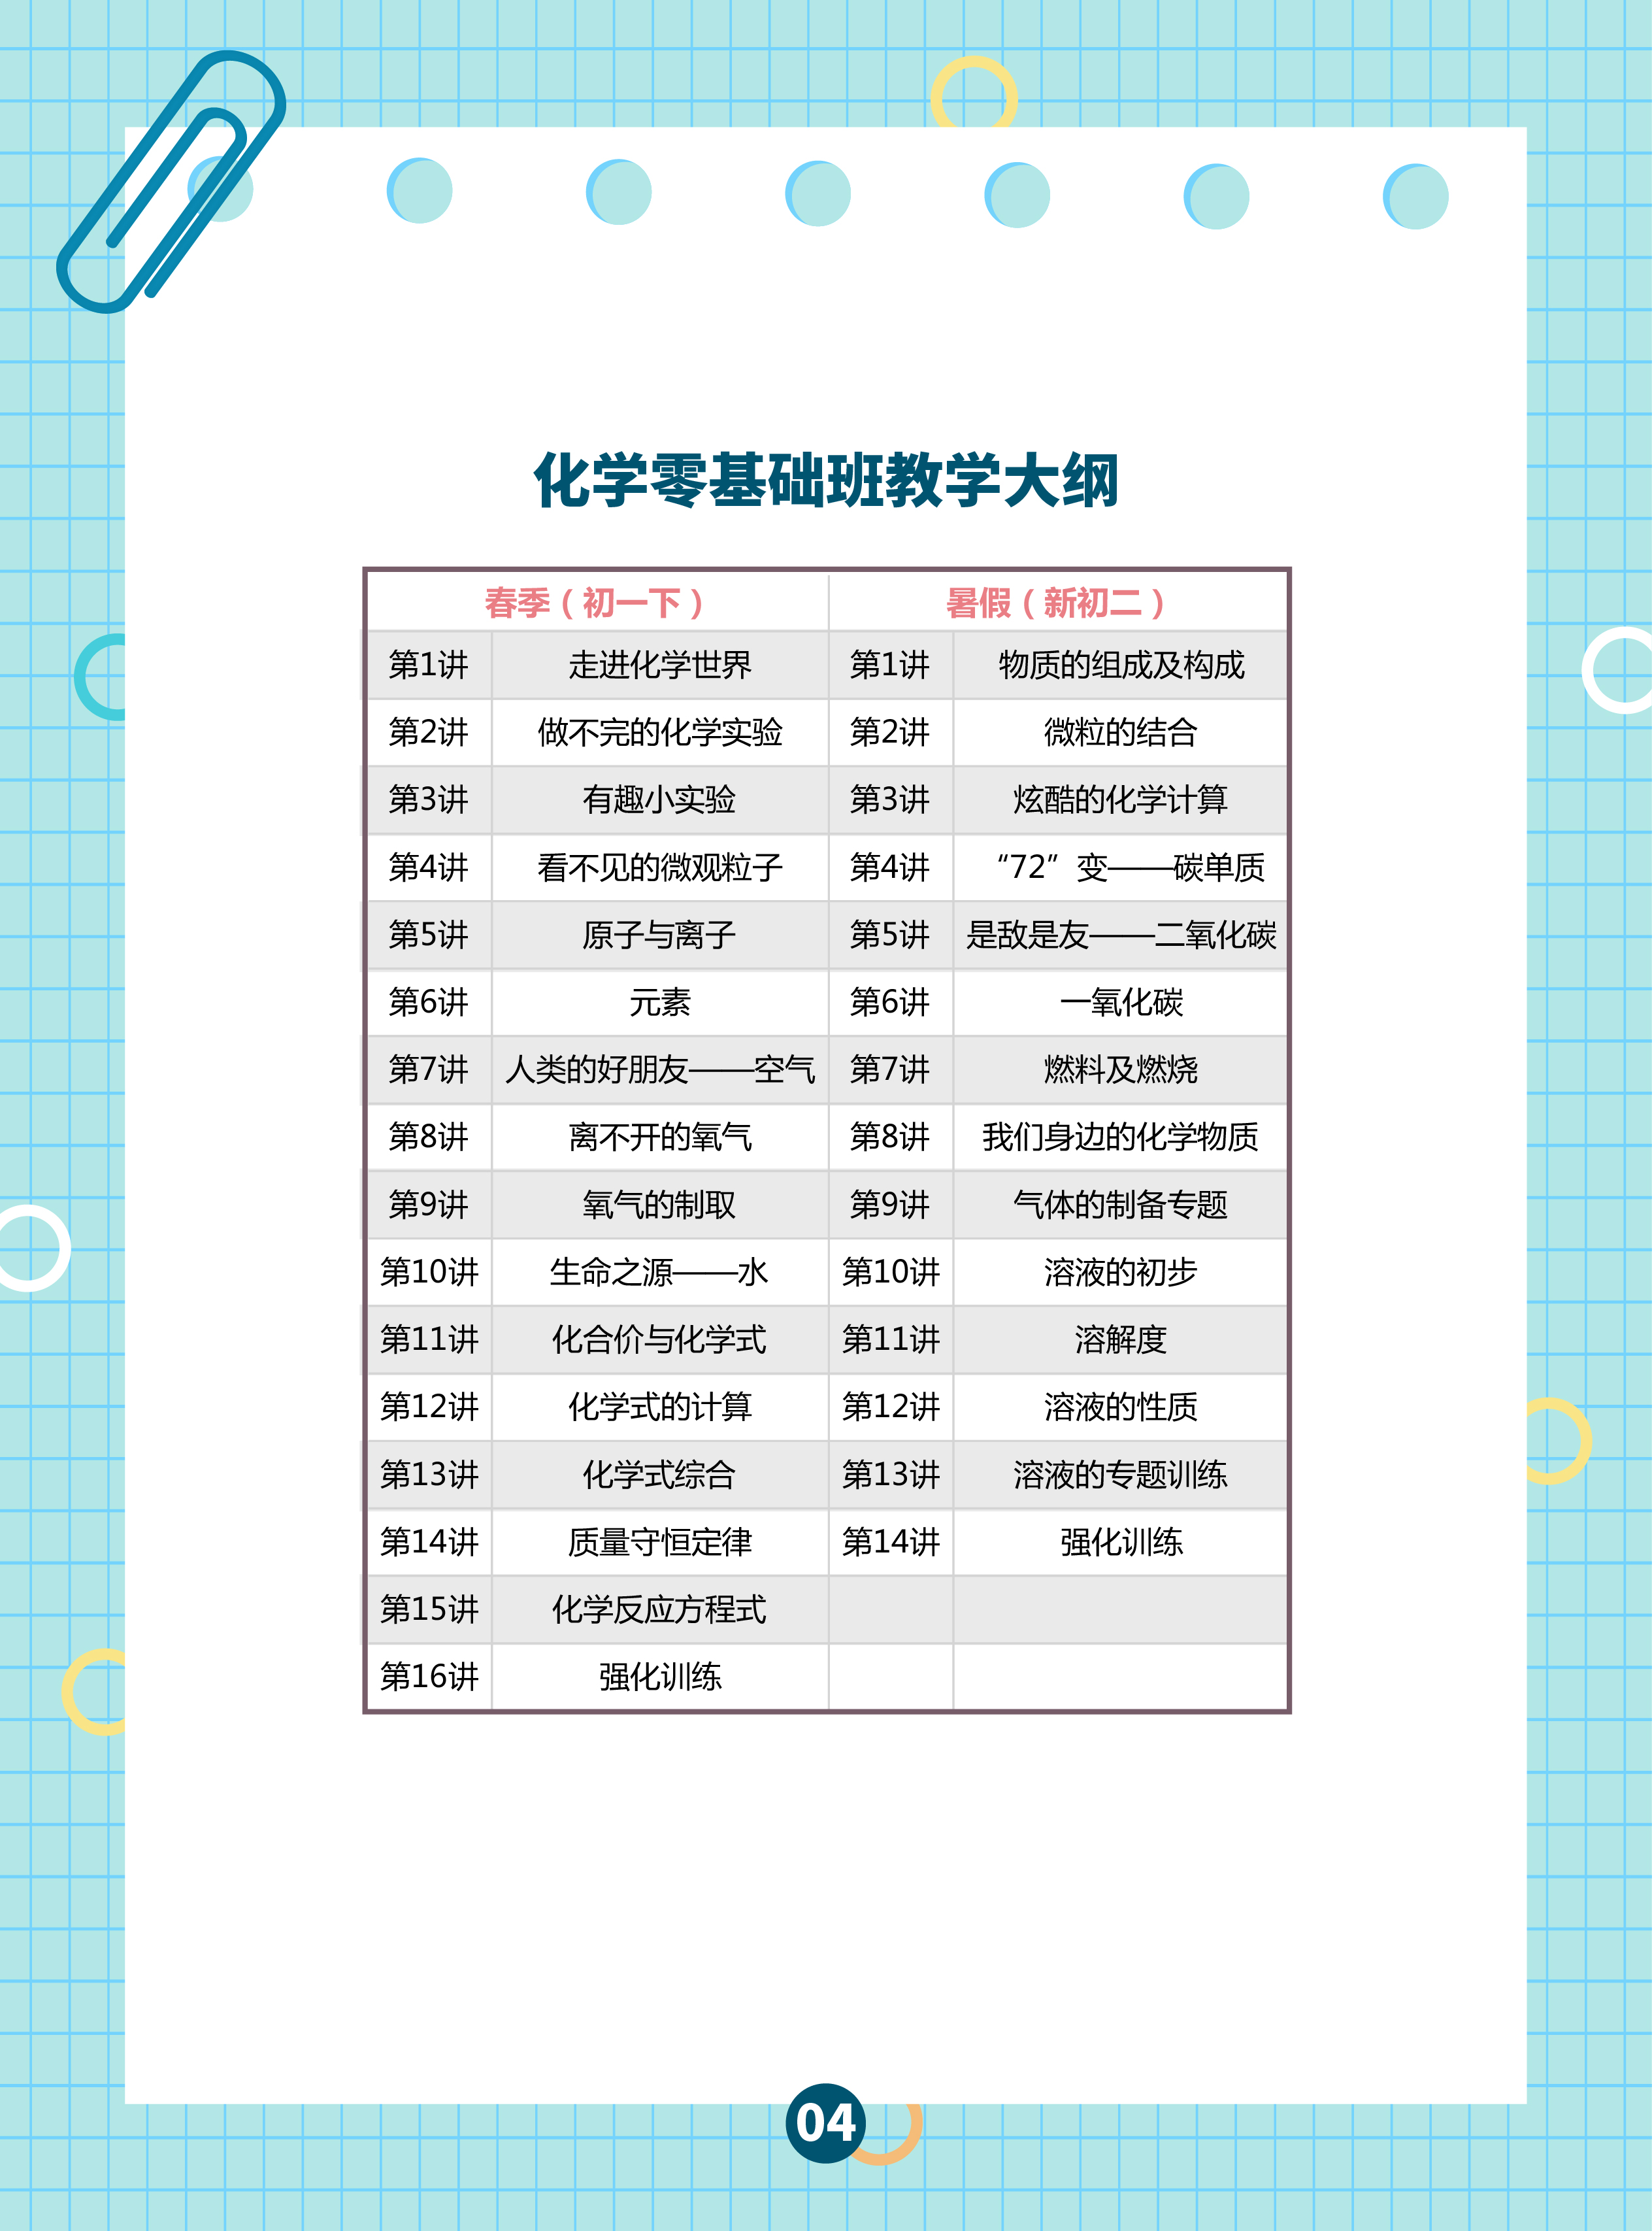 2019初中春暑课程安排1-08.jpg